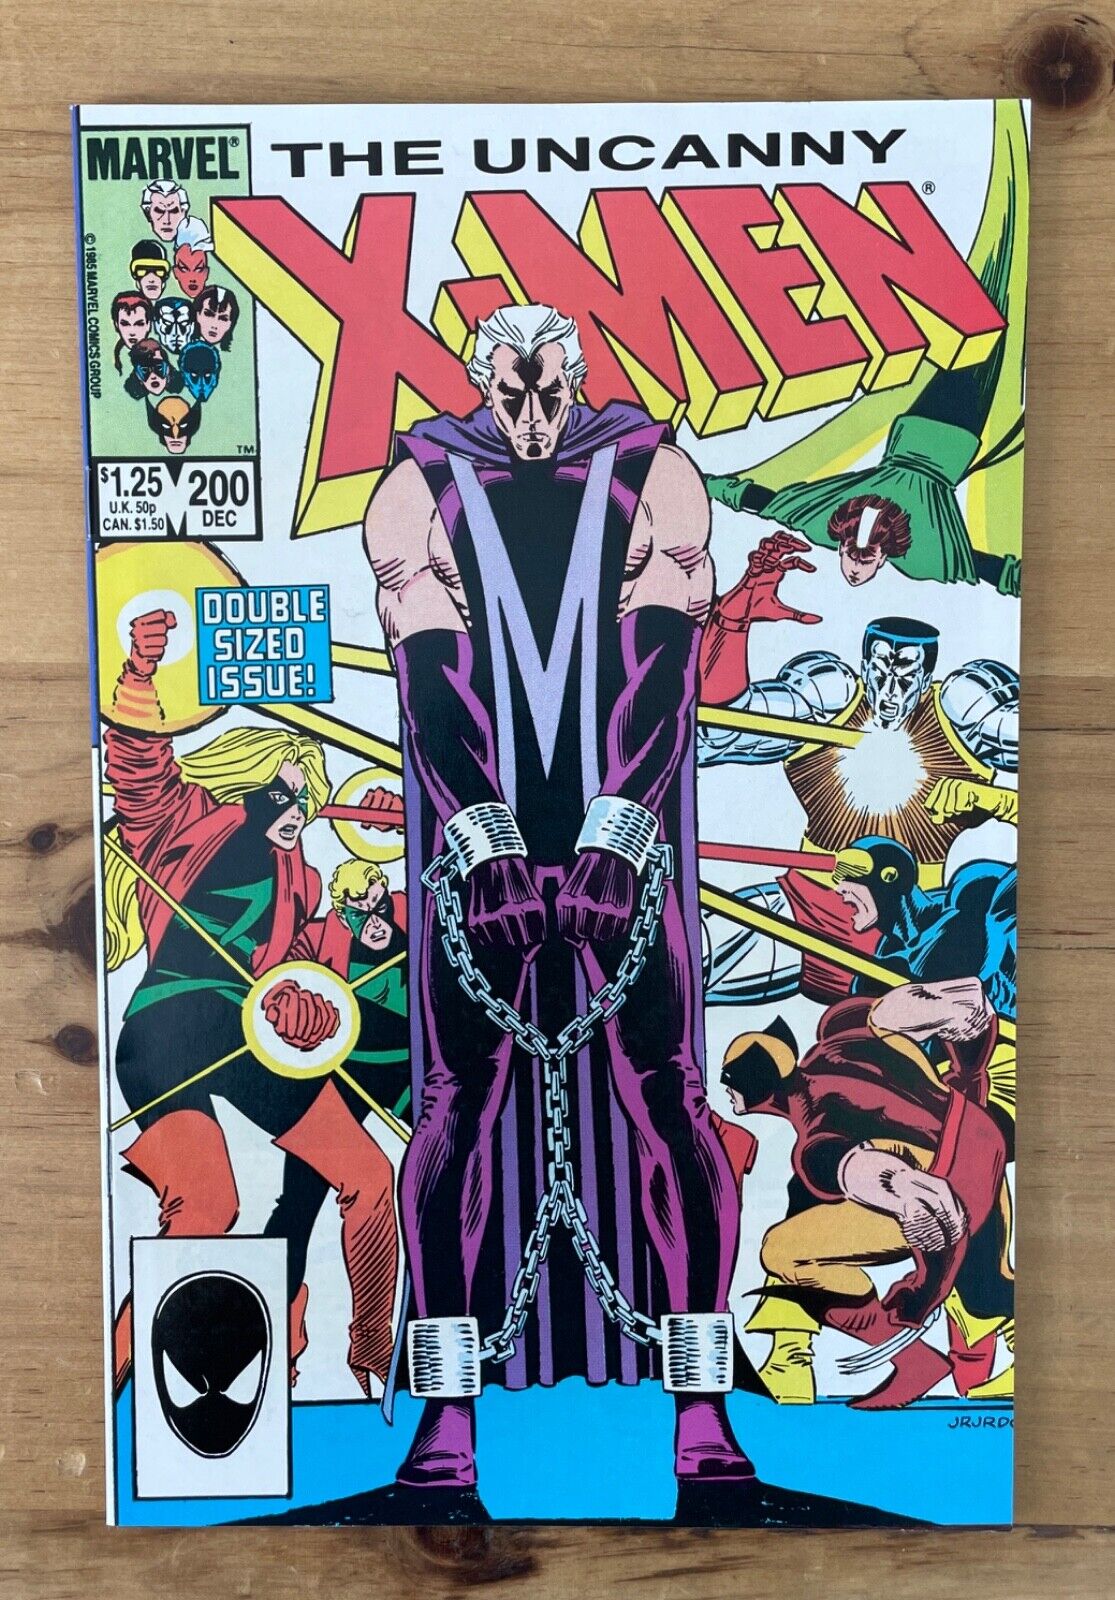 THE UNCANNY X-MEN #200 ~ MARVEL COMICS 1985 ~ NM